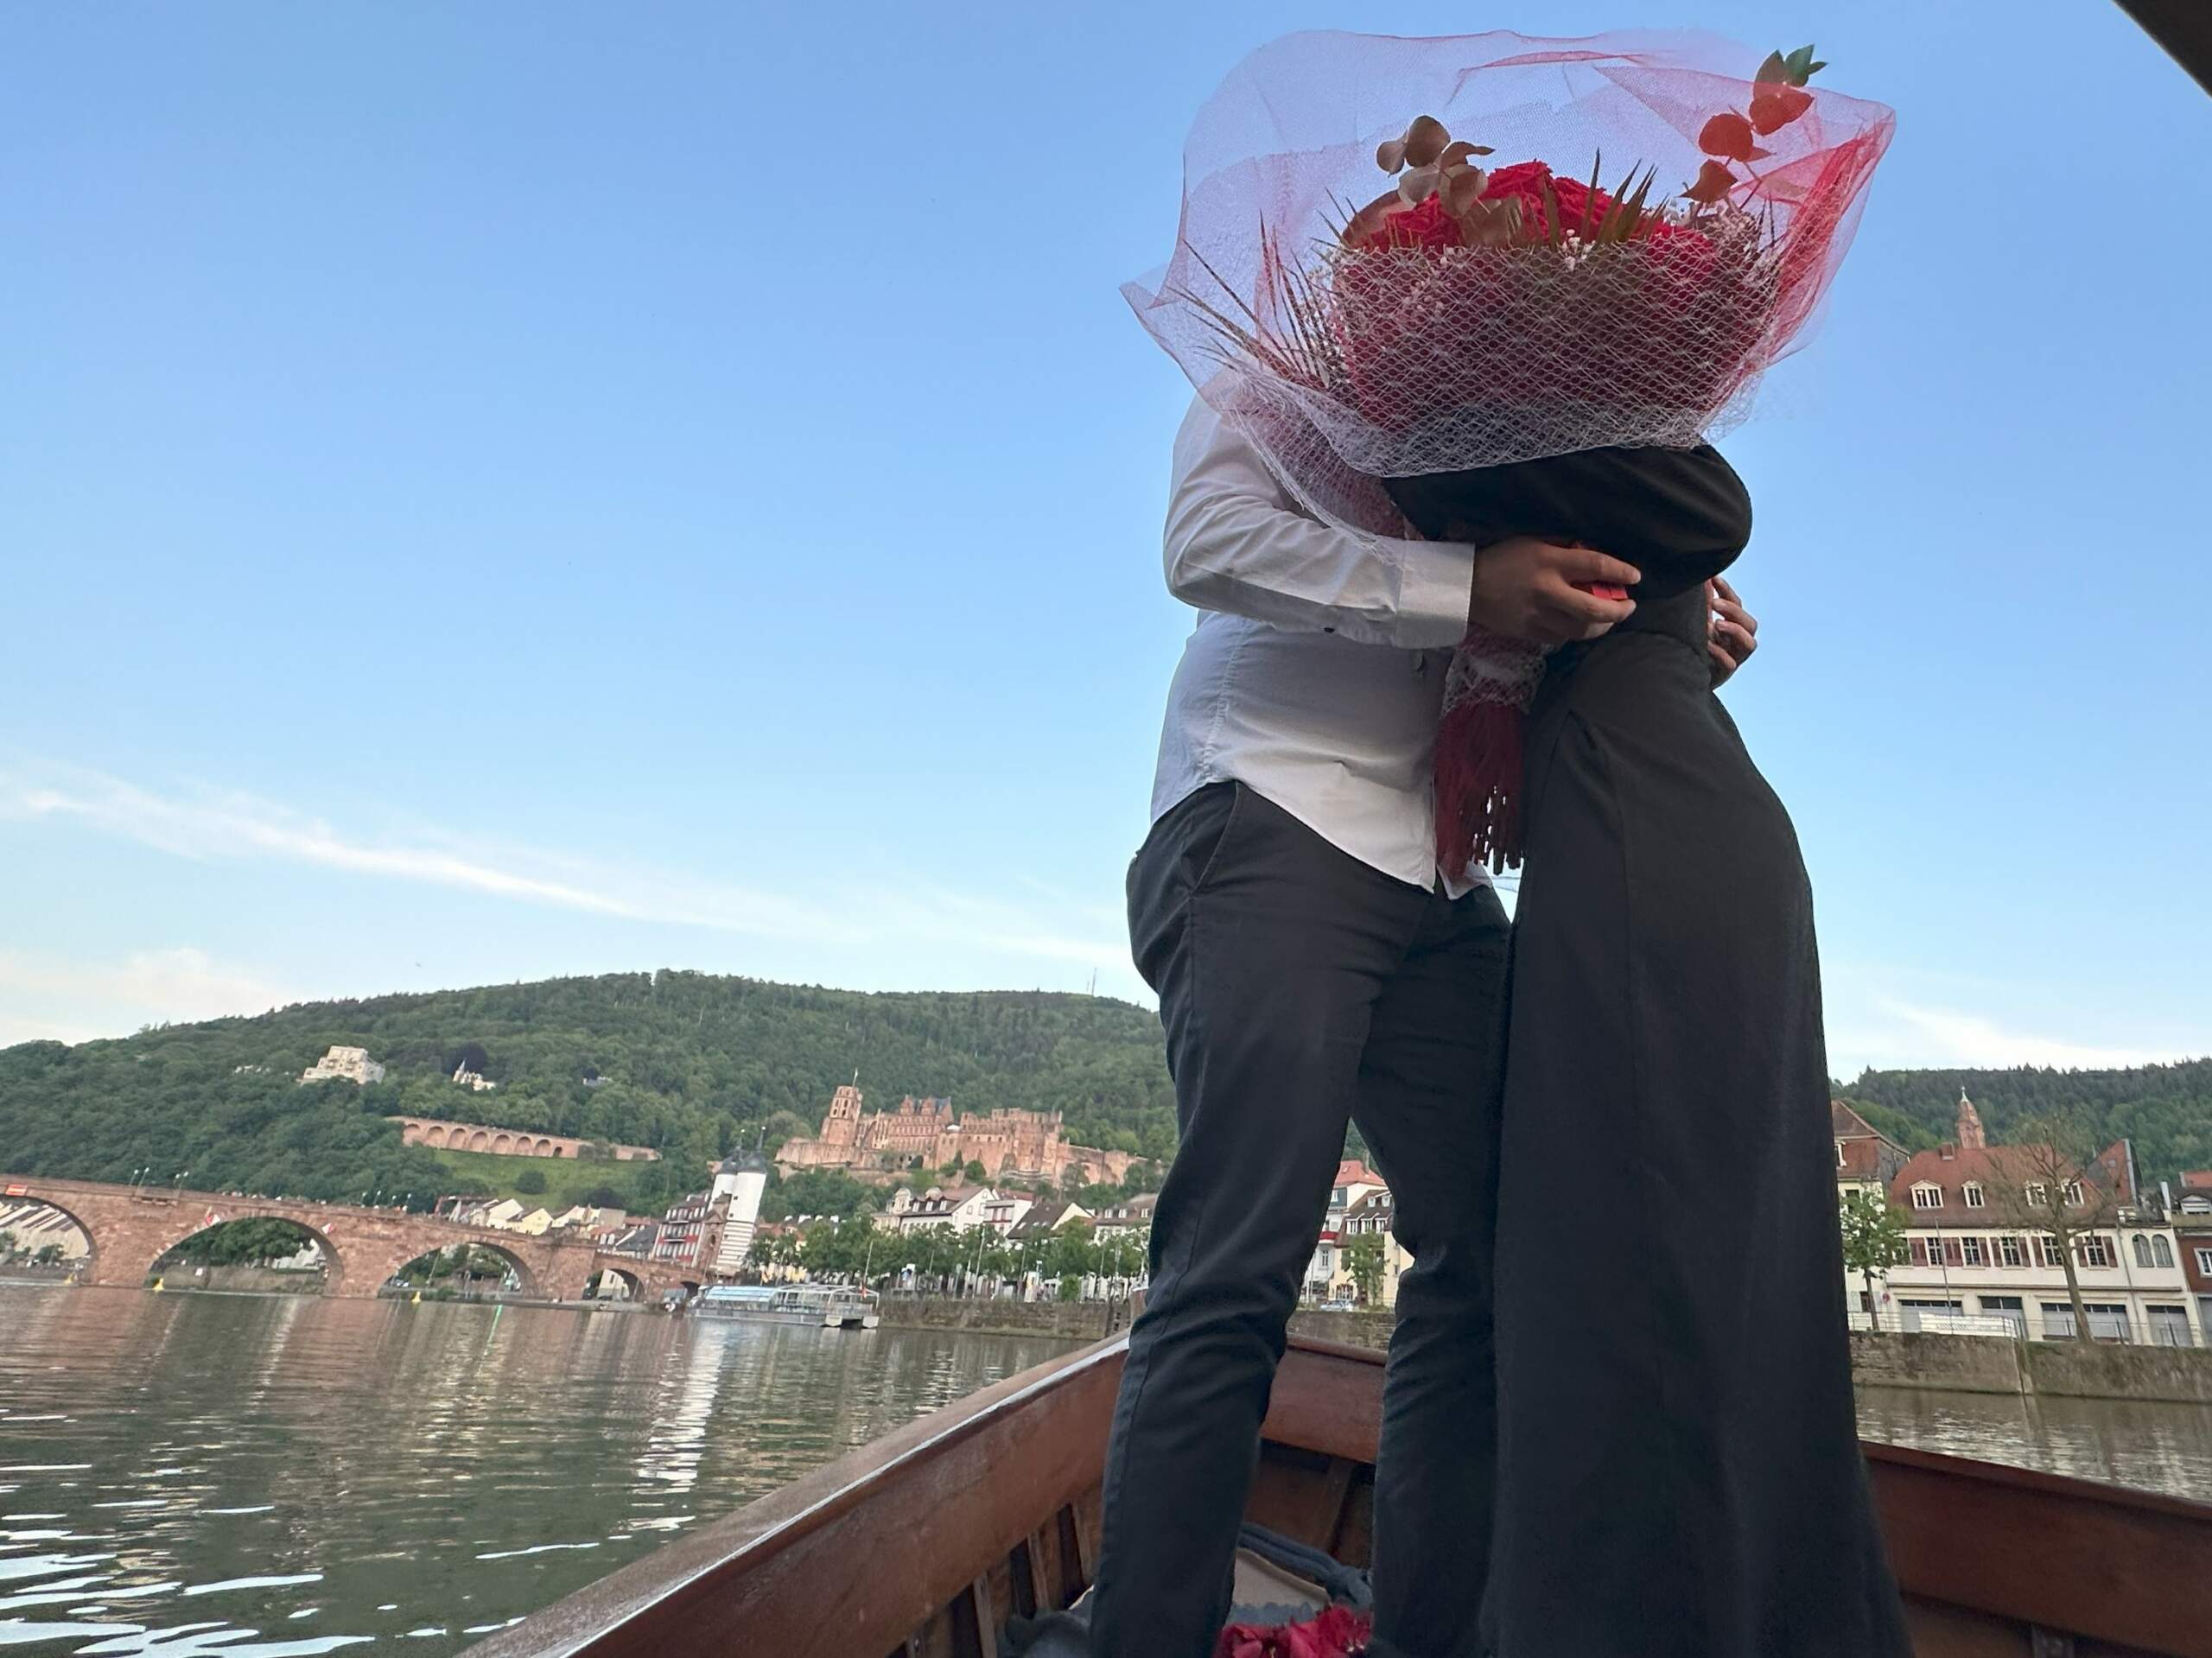 Ein Mann und eine Frauen haben sich an Bord des Bootes von Riverboat verlobt, sie stehen am Bug des Bugs und umarmen sich mit einem Strauß Rosen in der Hand, dahinter das Heidelberger Schloss und die Alte Brücke